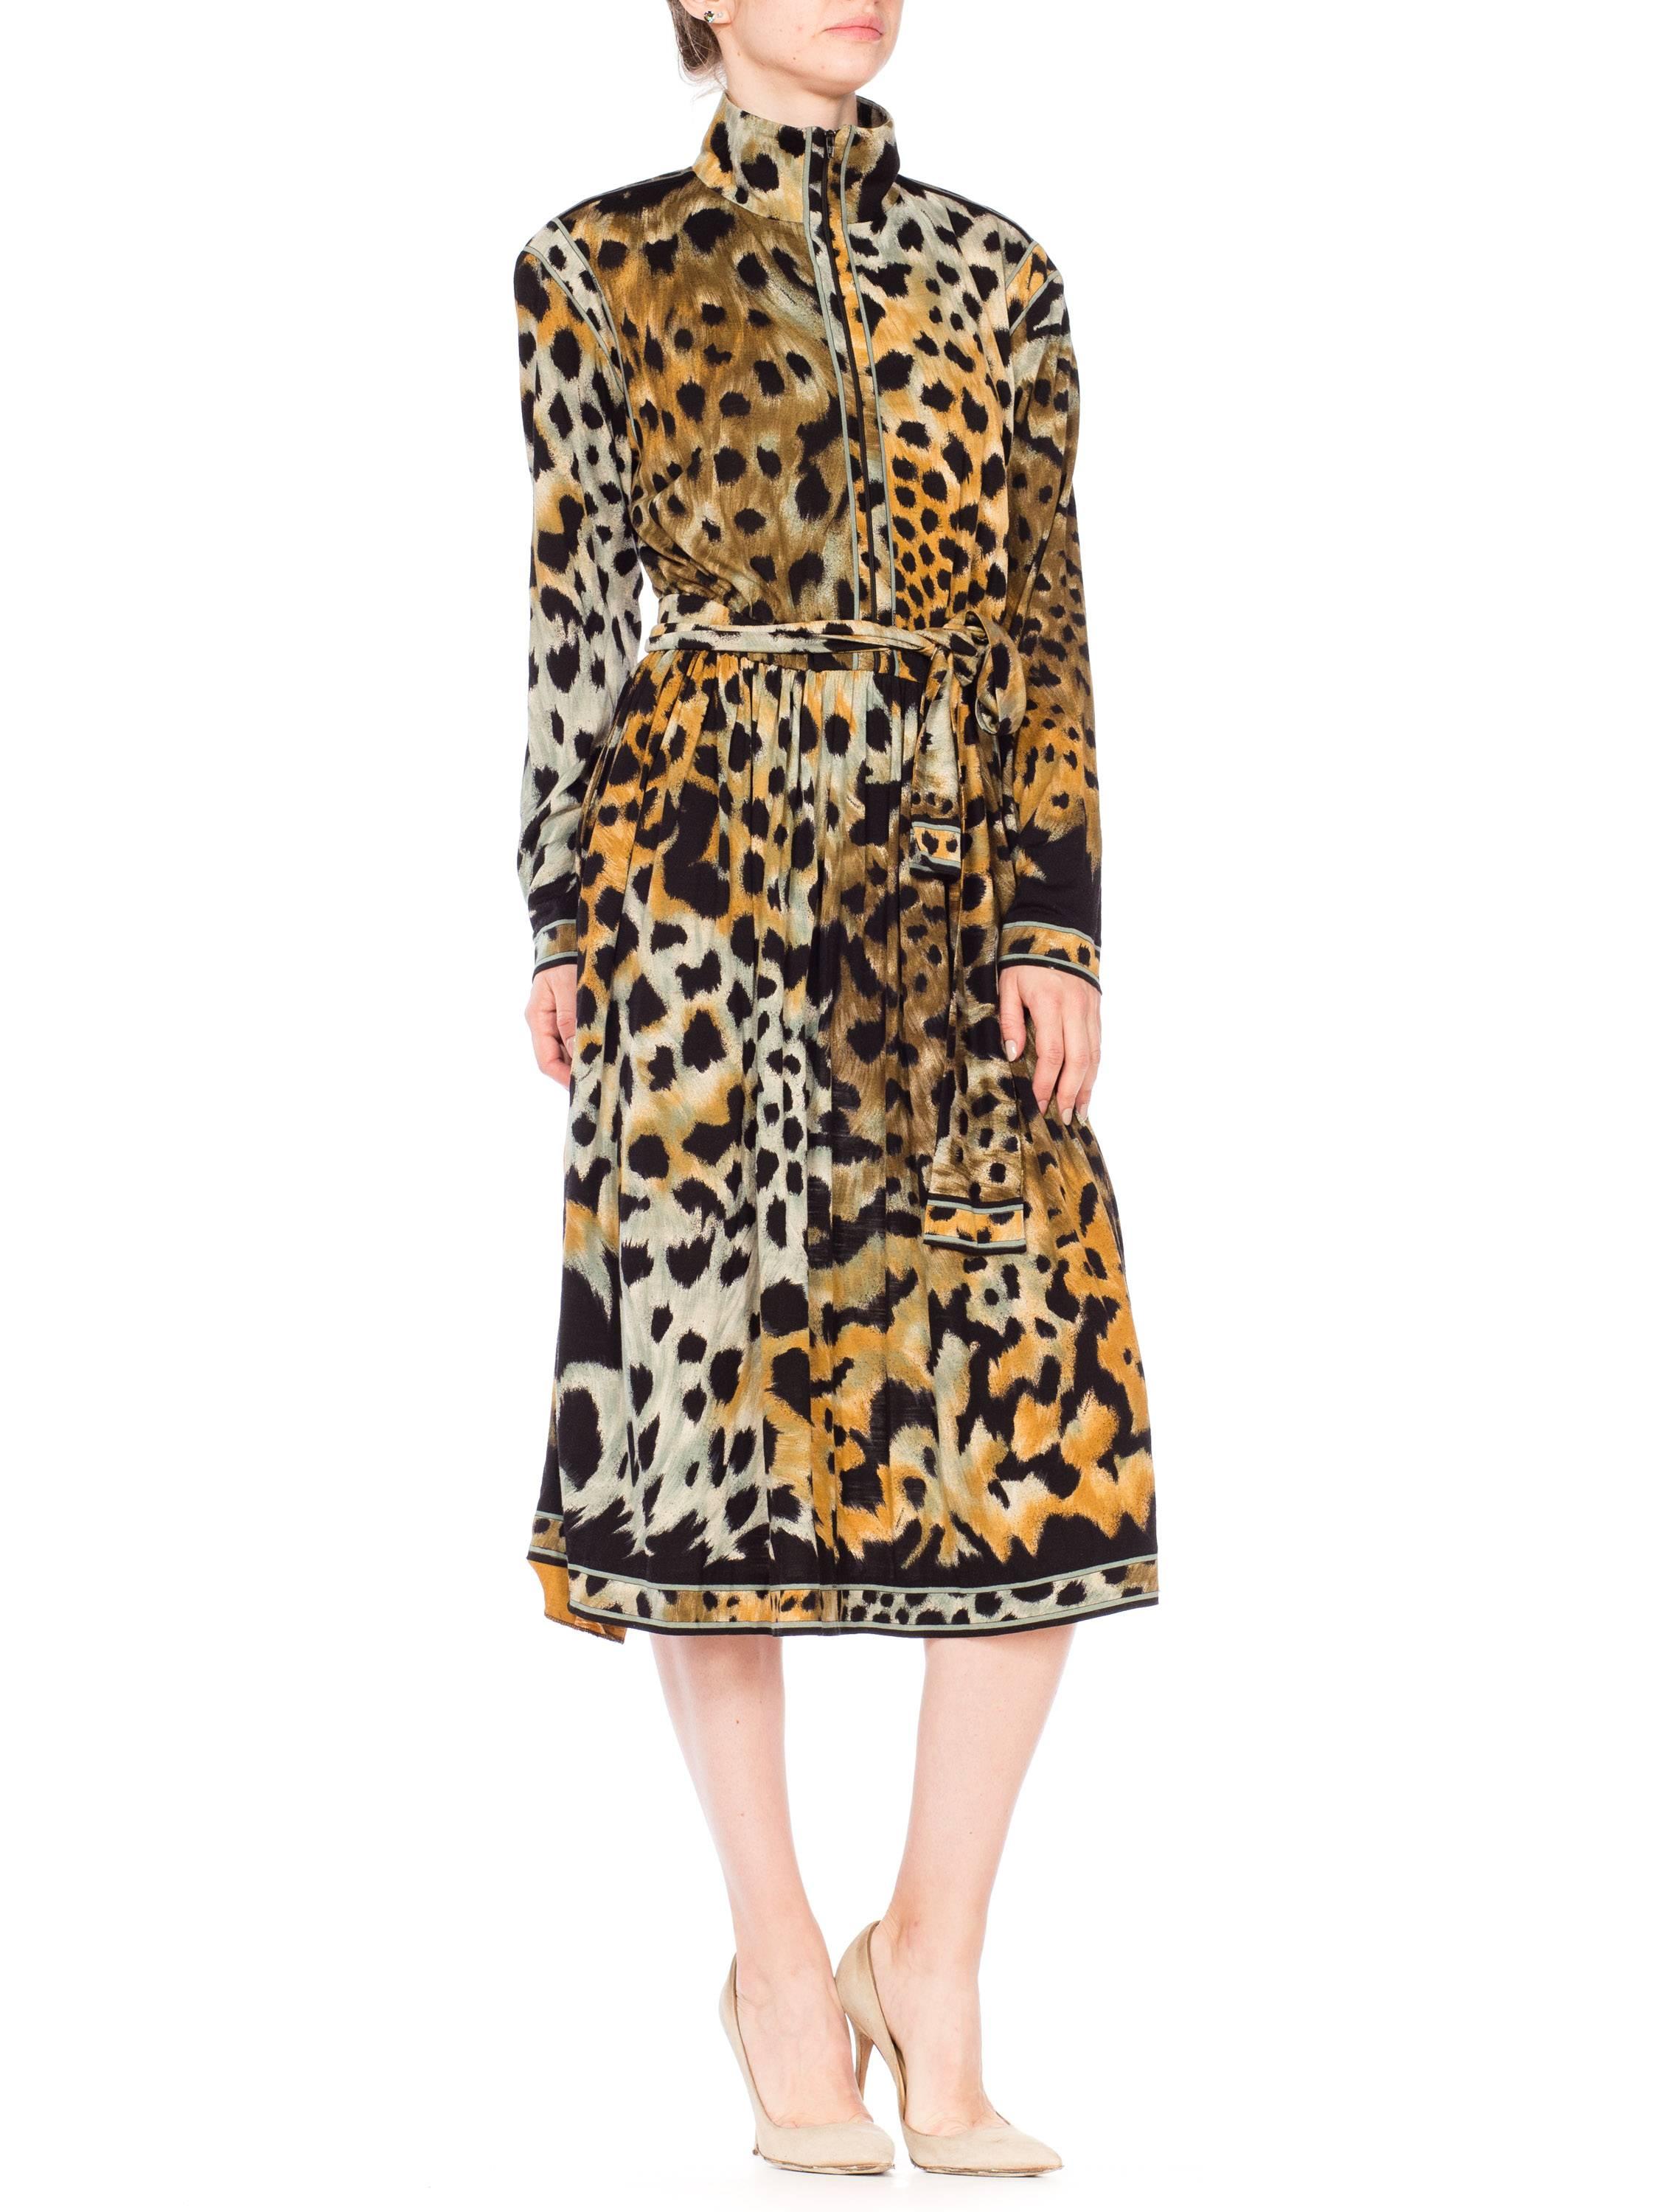 Women's Leopard Print Leonard French Jersey Dress